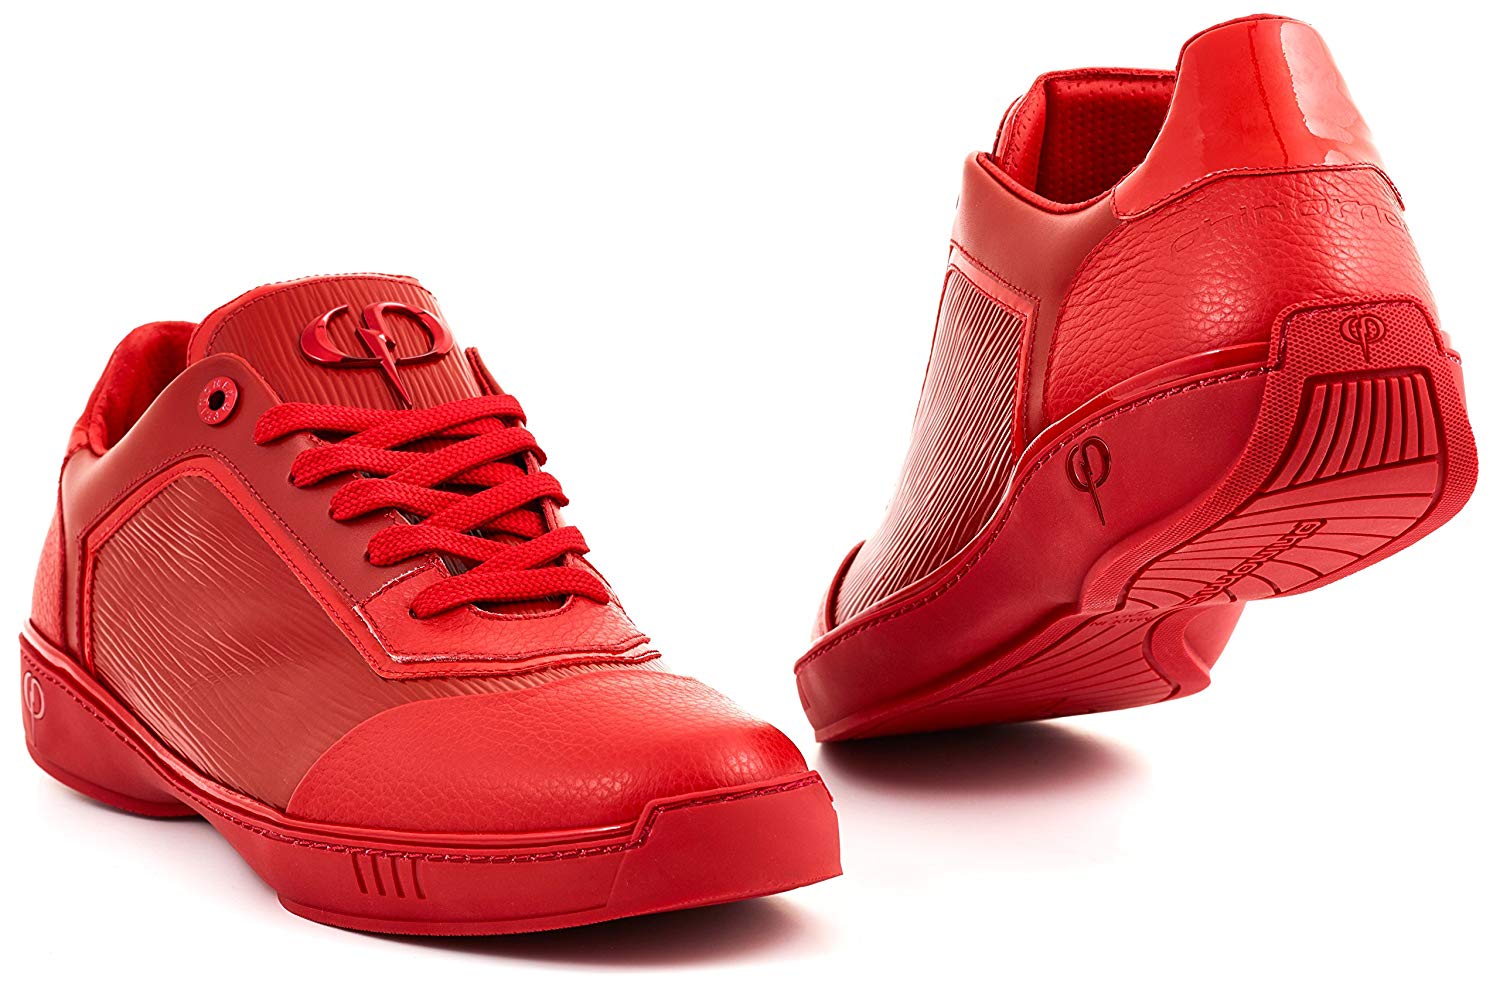 PHINOMEN Luxus Sneaker - Echtleder - Low-Top, Made in Italy